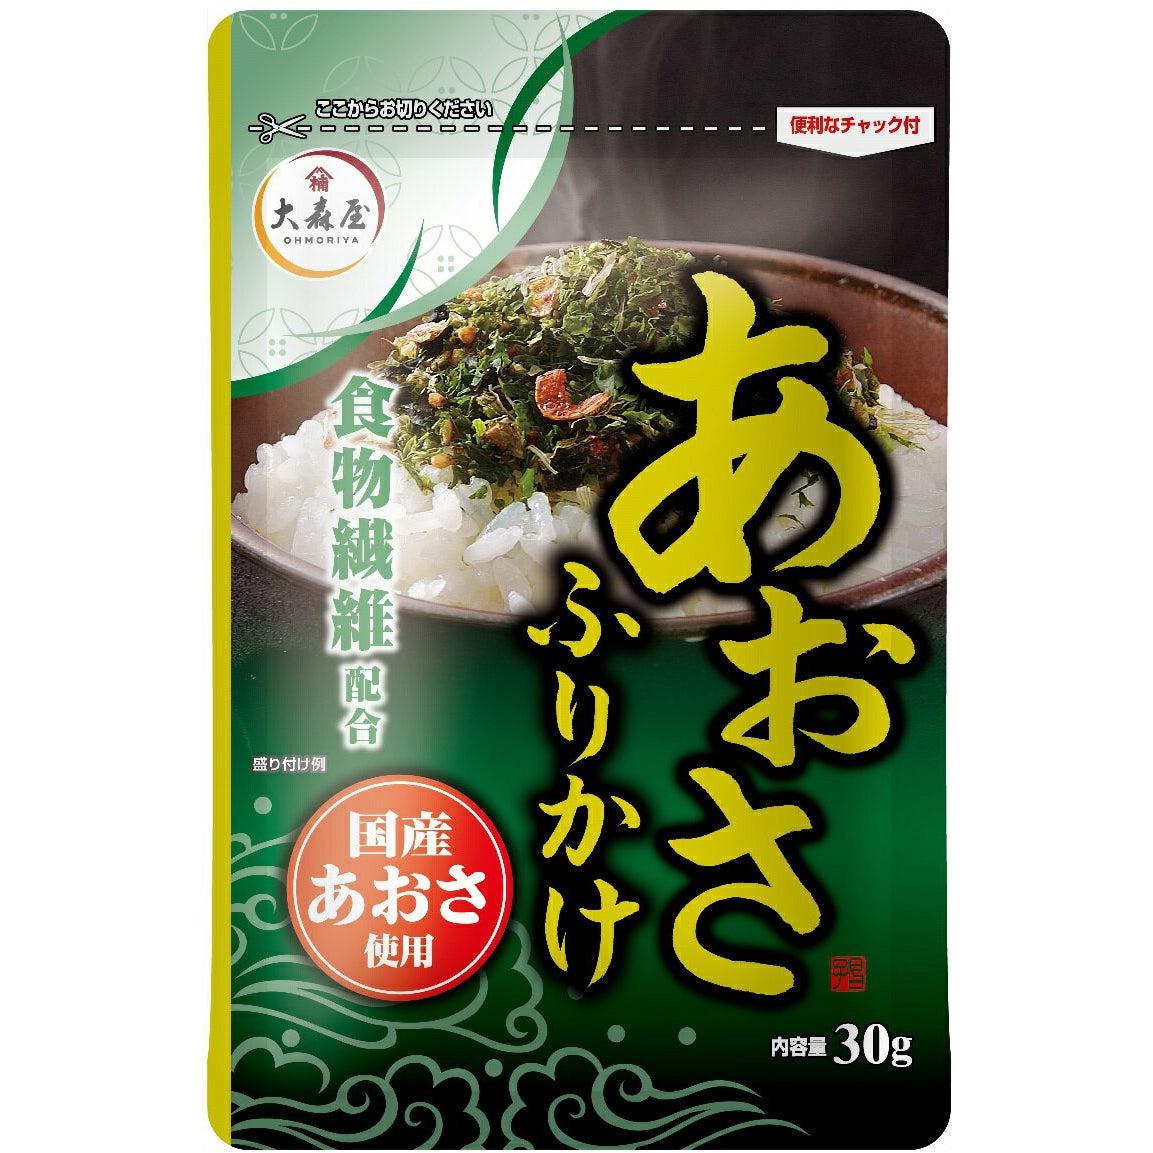 Ohmoriya Aosa Sea Lettuce Furikake Rice Seasoning 30g